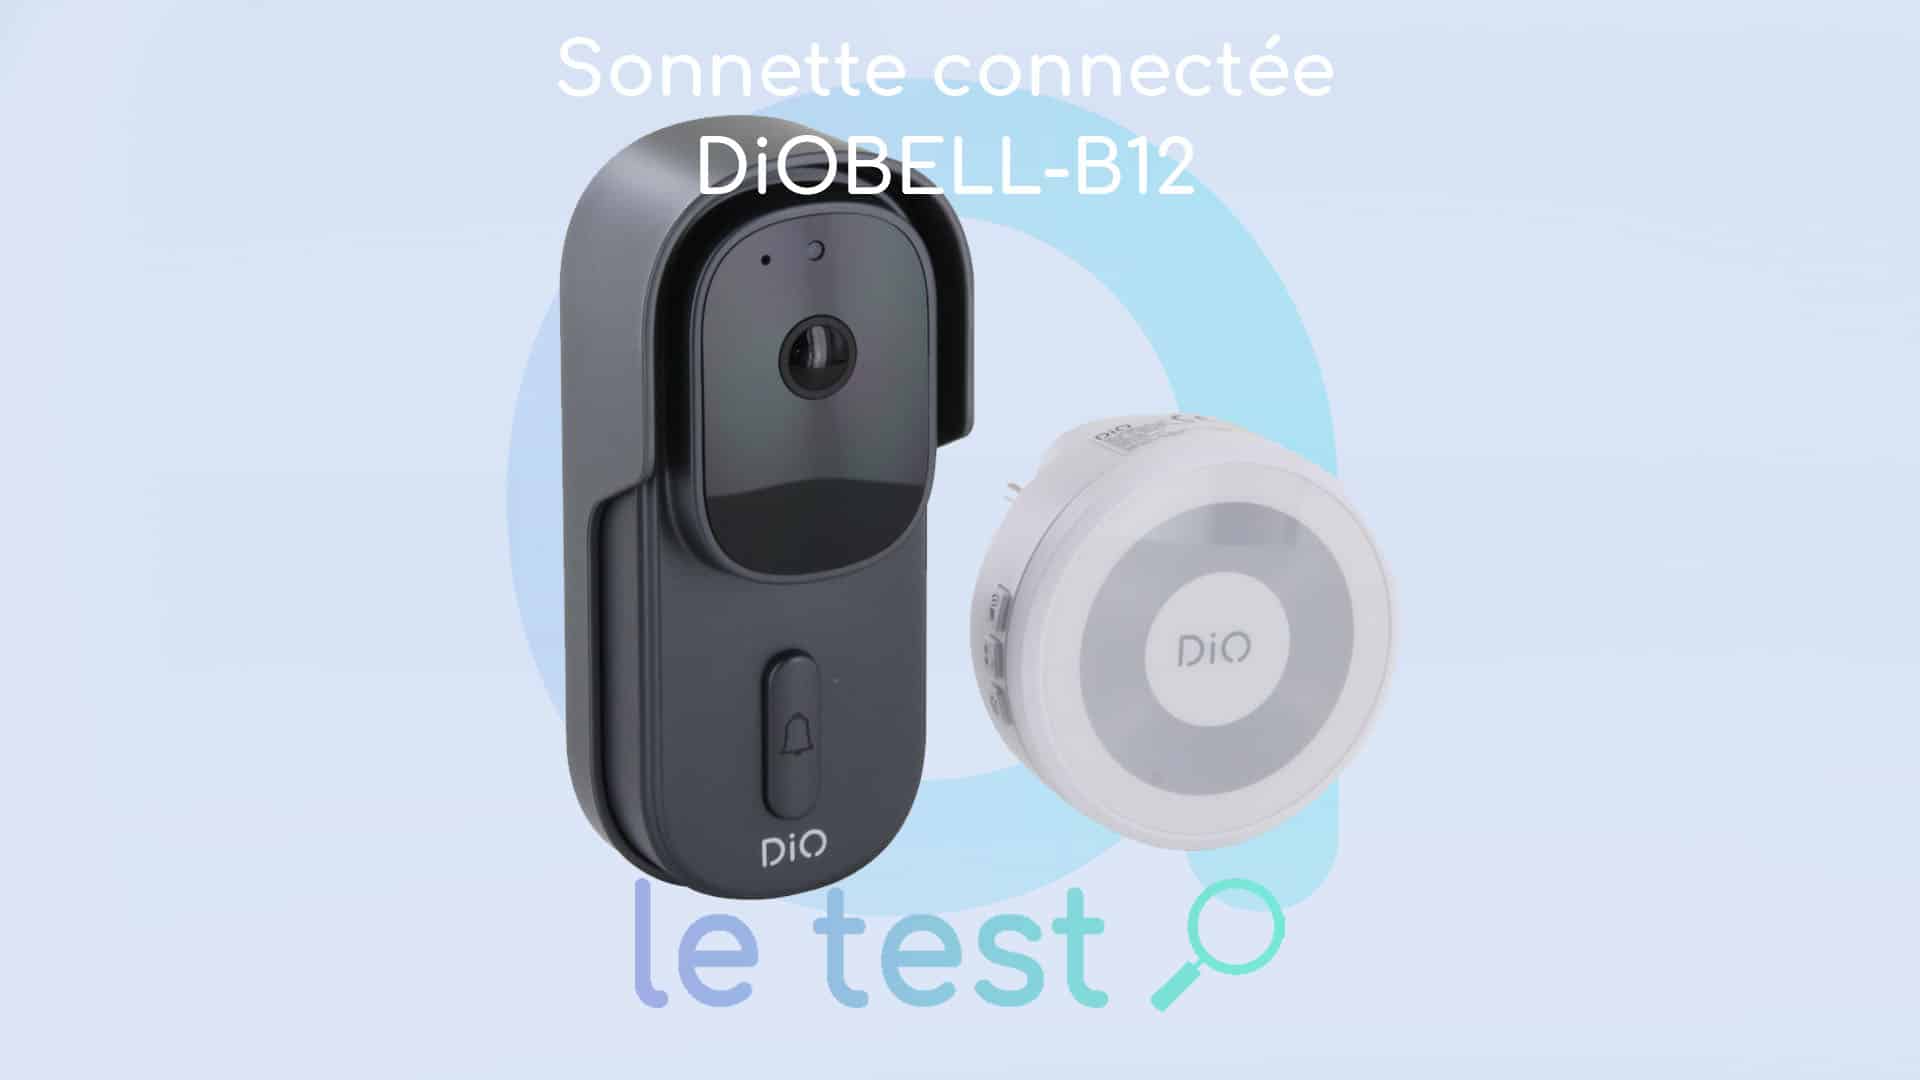 Test DiOBELL-B12 : qualité et simplicité pour cette sonnette connectée DiO  – Les Alexiens